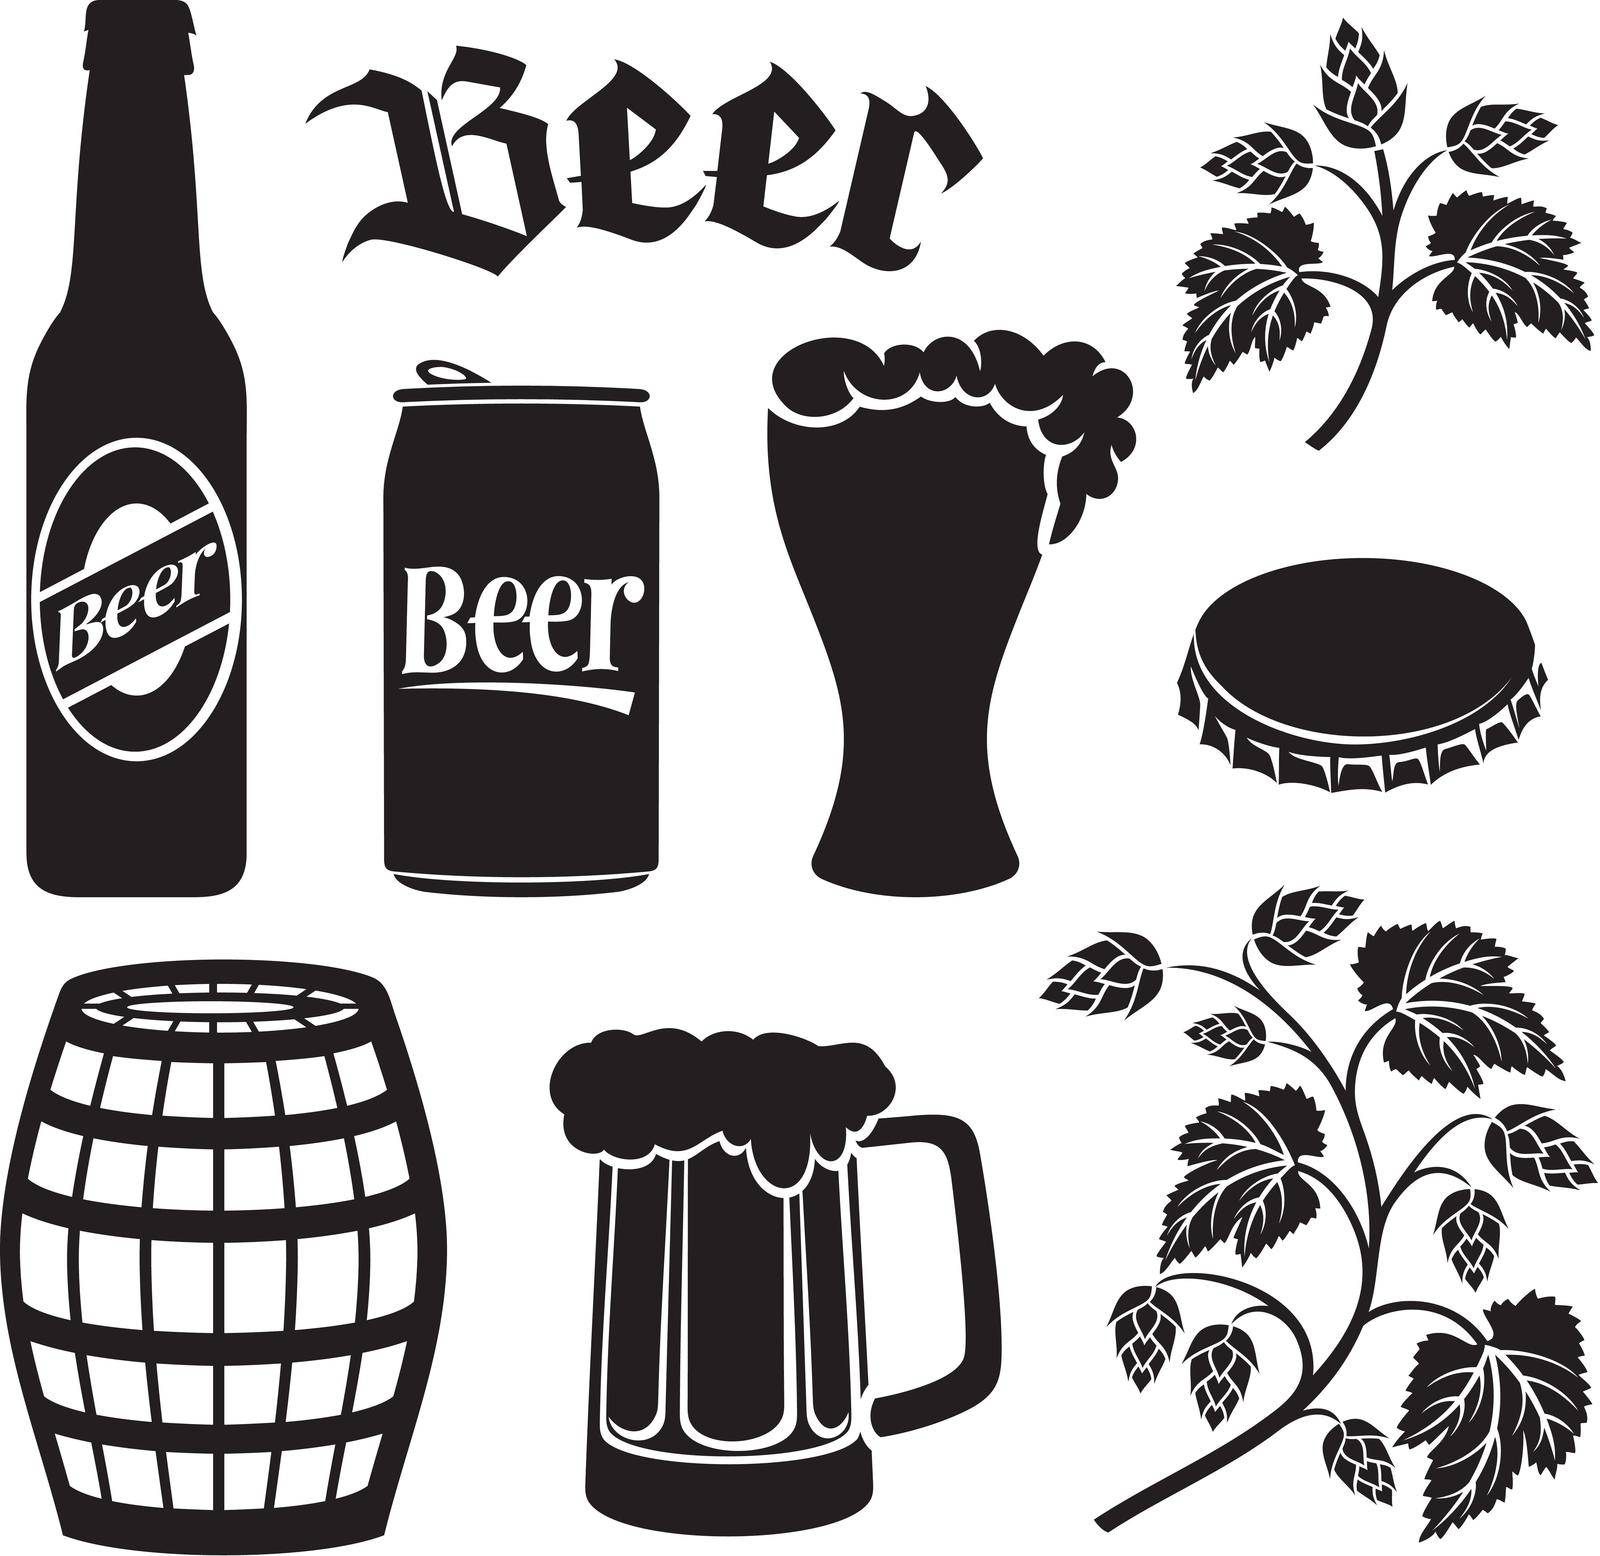 Beer icons set (hops leaf, wooden barrel, glass, can, bottle cap, mug, bottle)